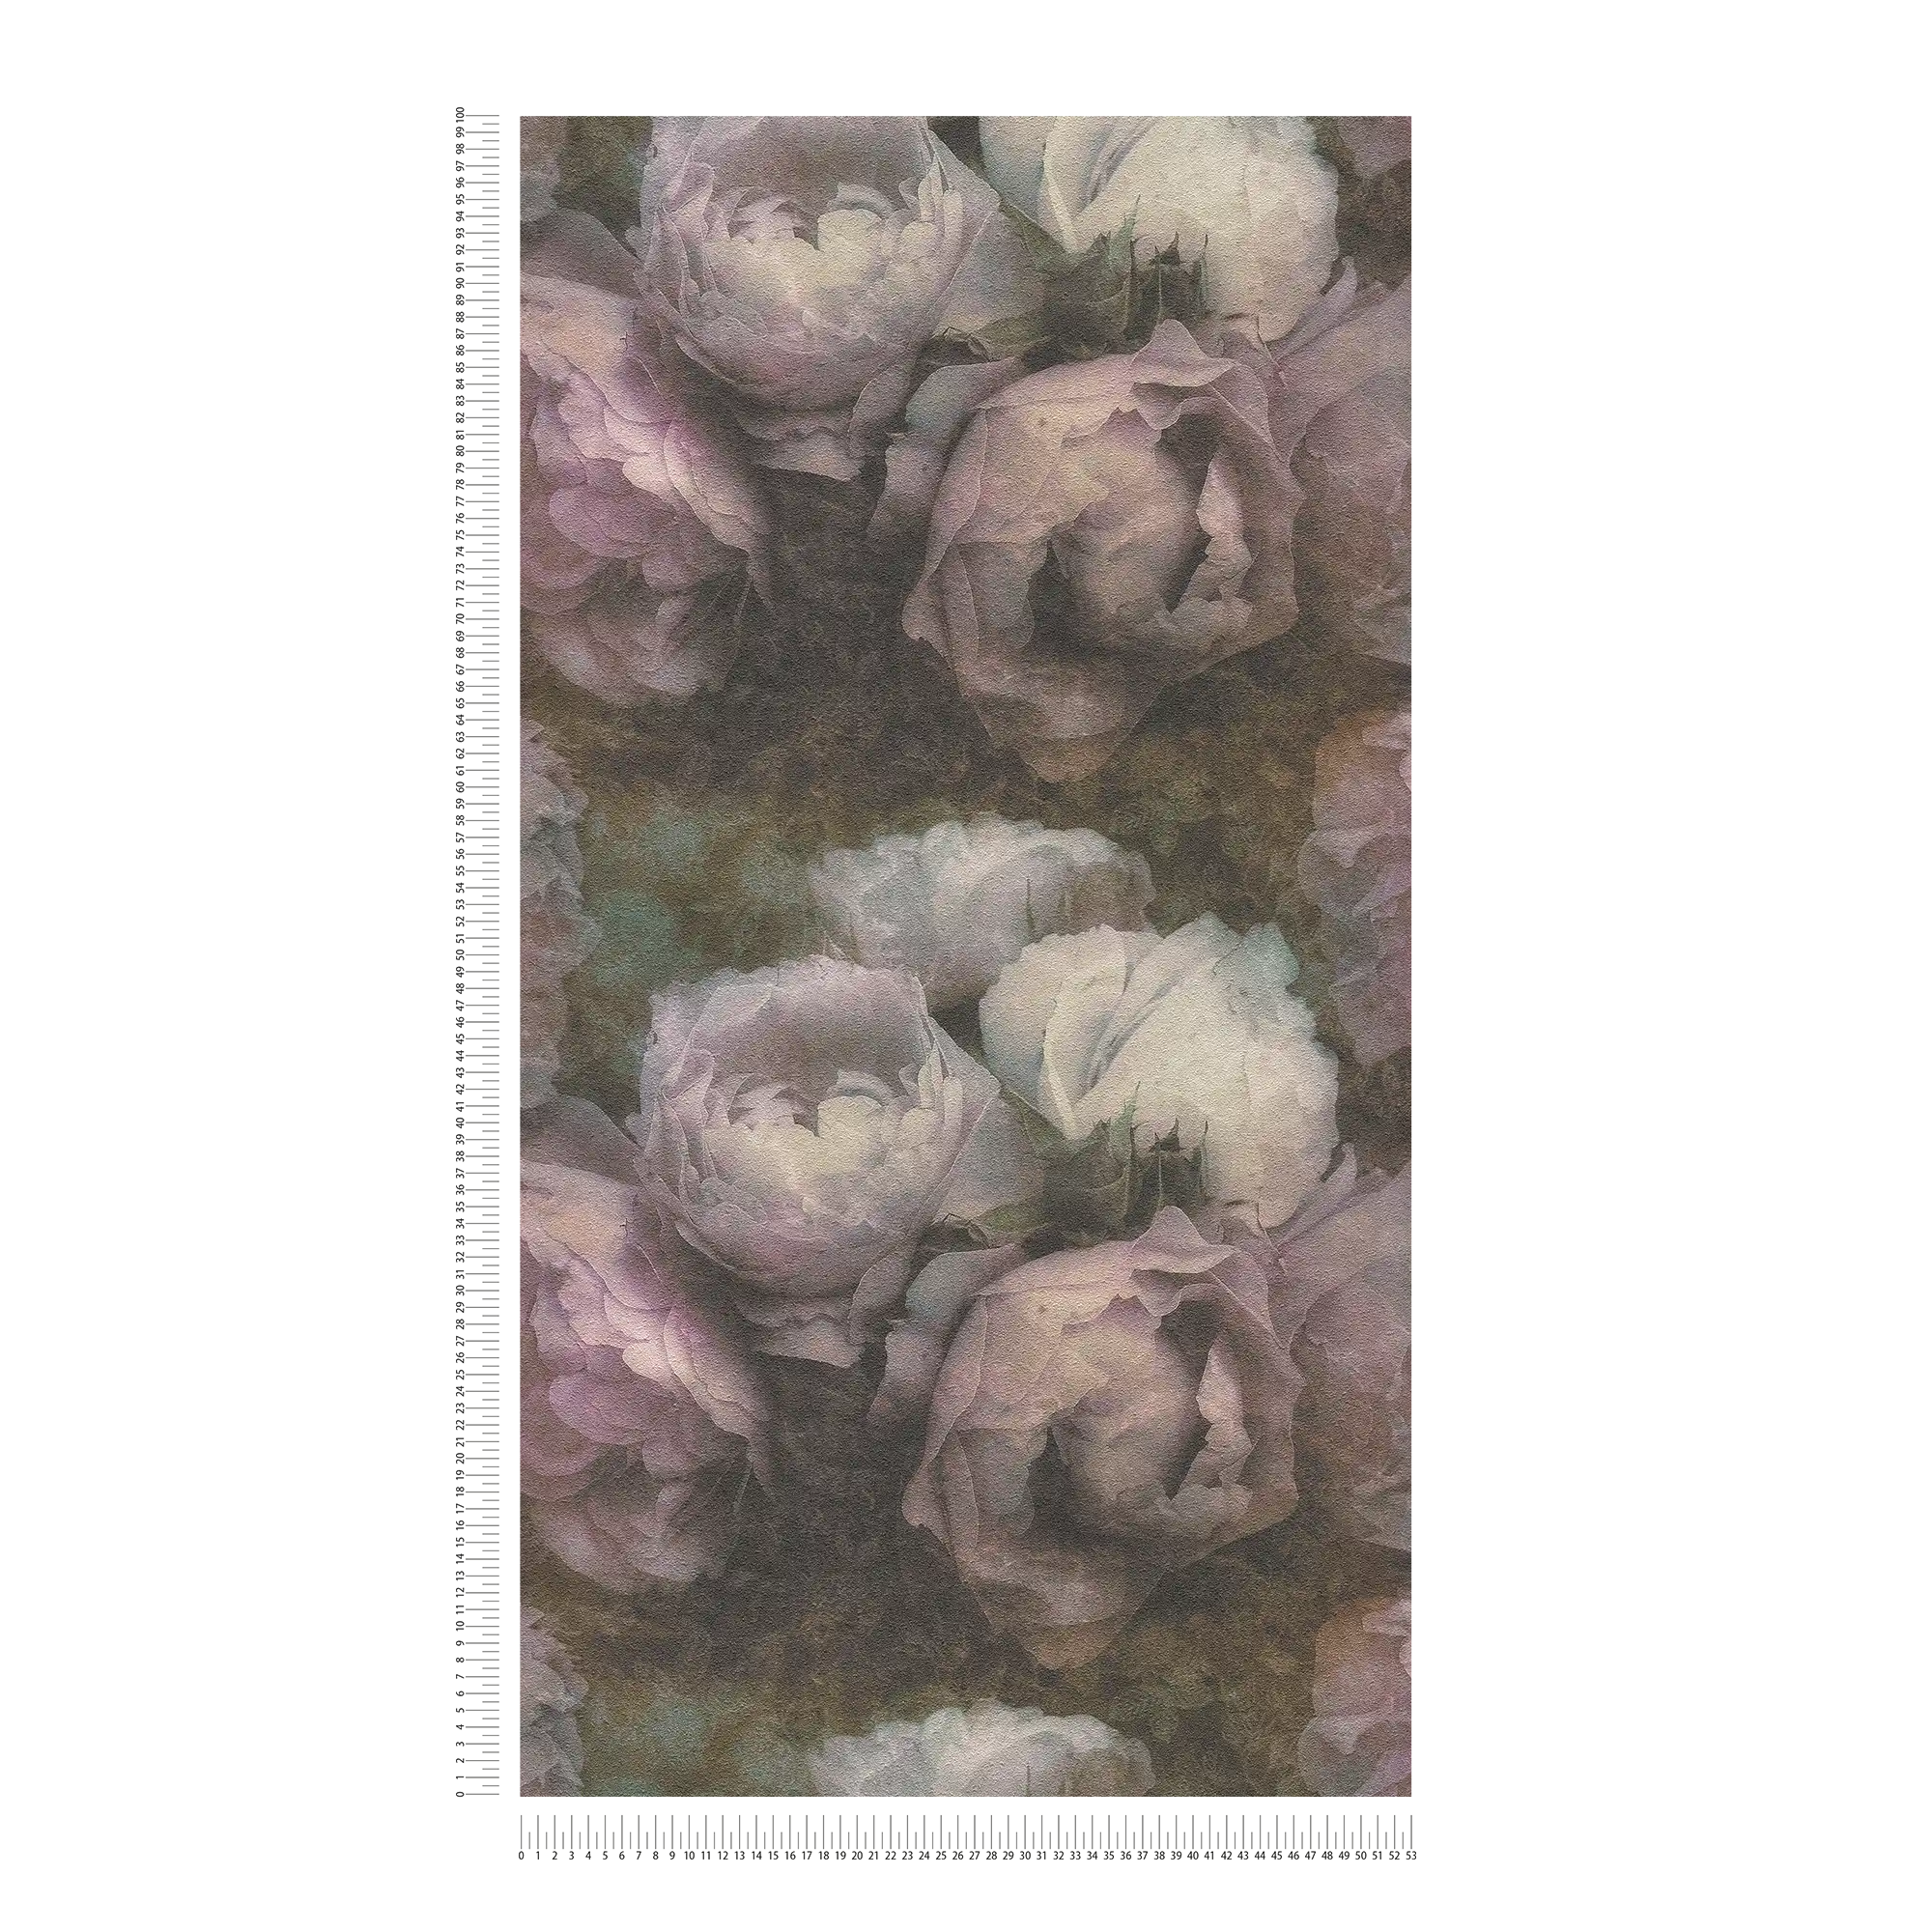             behang pioenrozen in vintage stijl - violet, grijs, wit
        